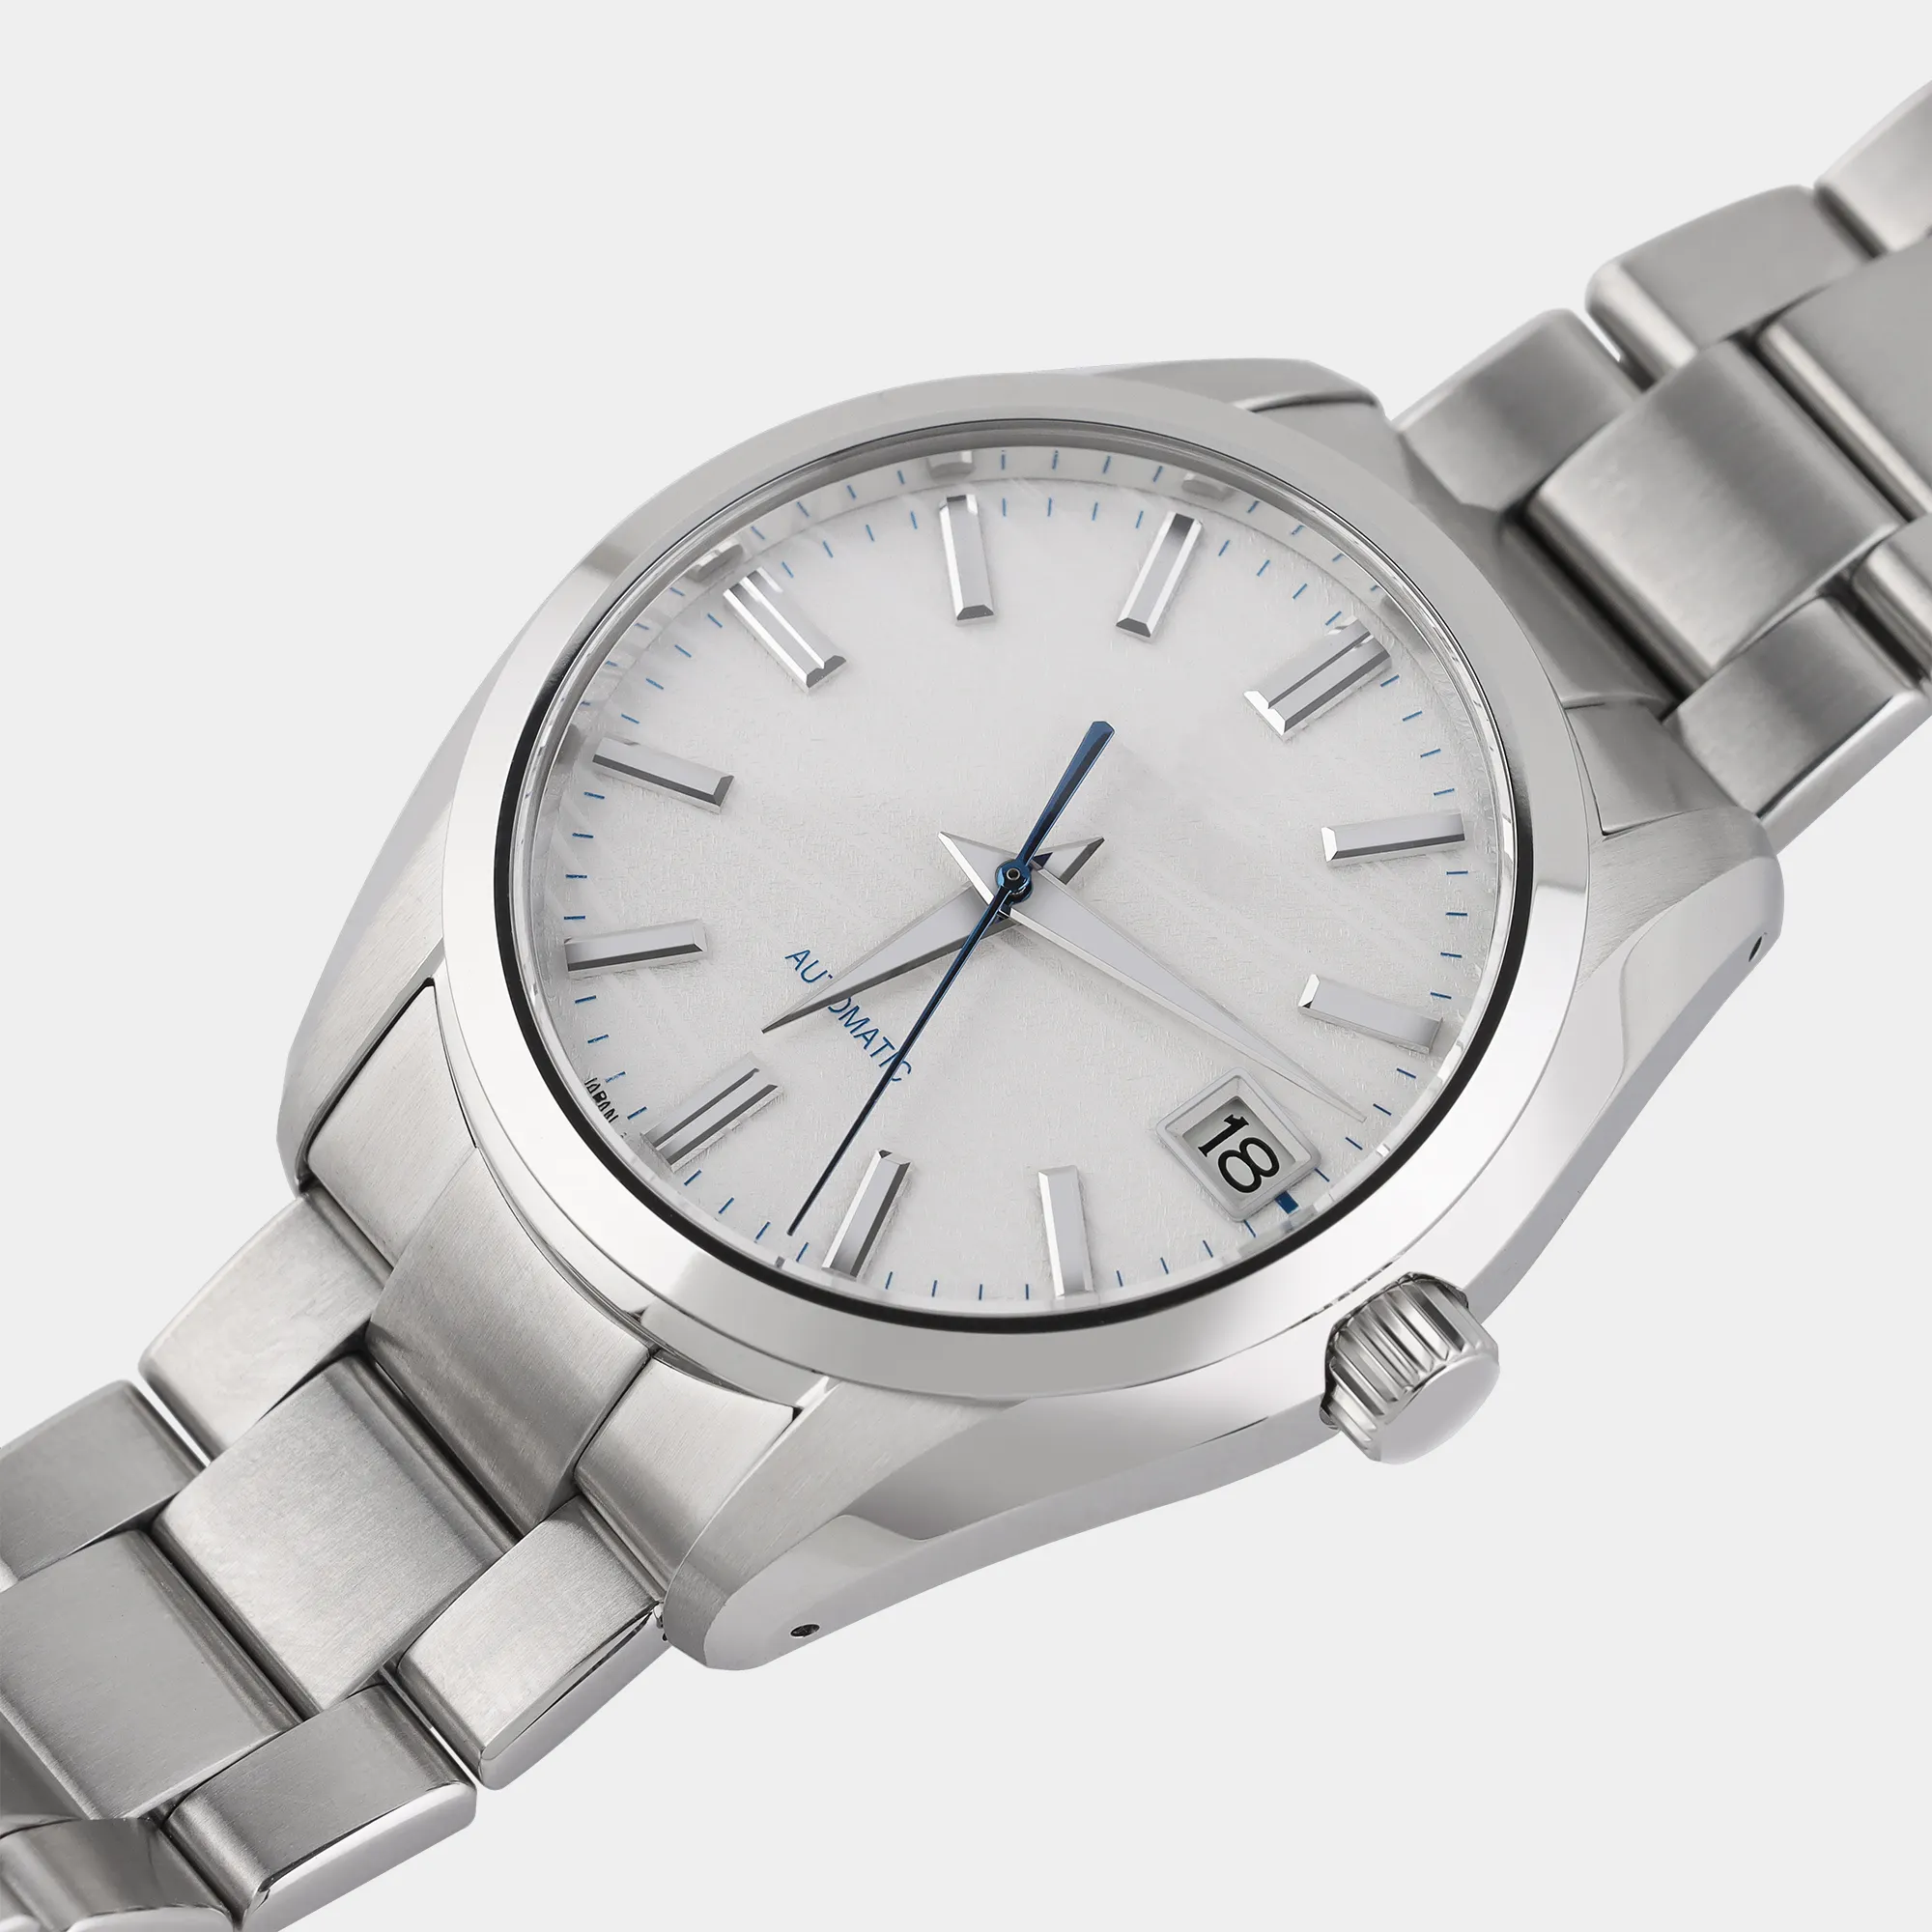 Moderno carattere Barton punti ora orologio maschile resistente alla pressione dell'acqua di 3ATM orologio automatico uomo